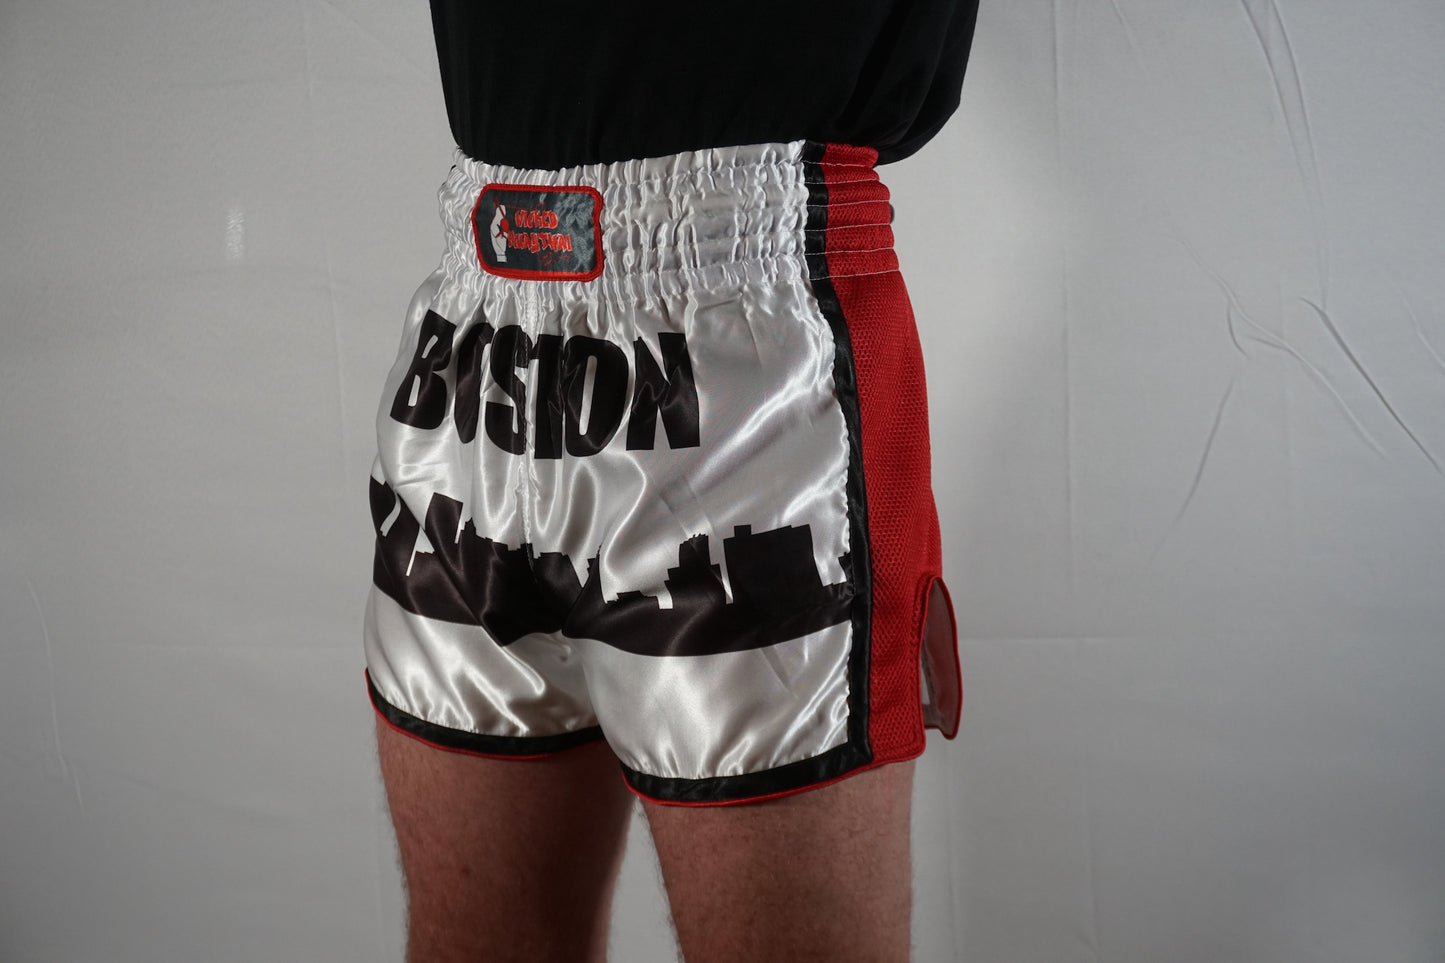 Boston Muay Thai Shorts (Sublimated)